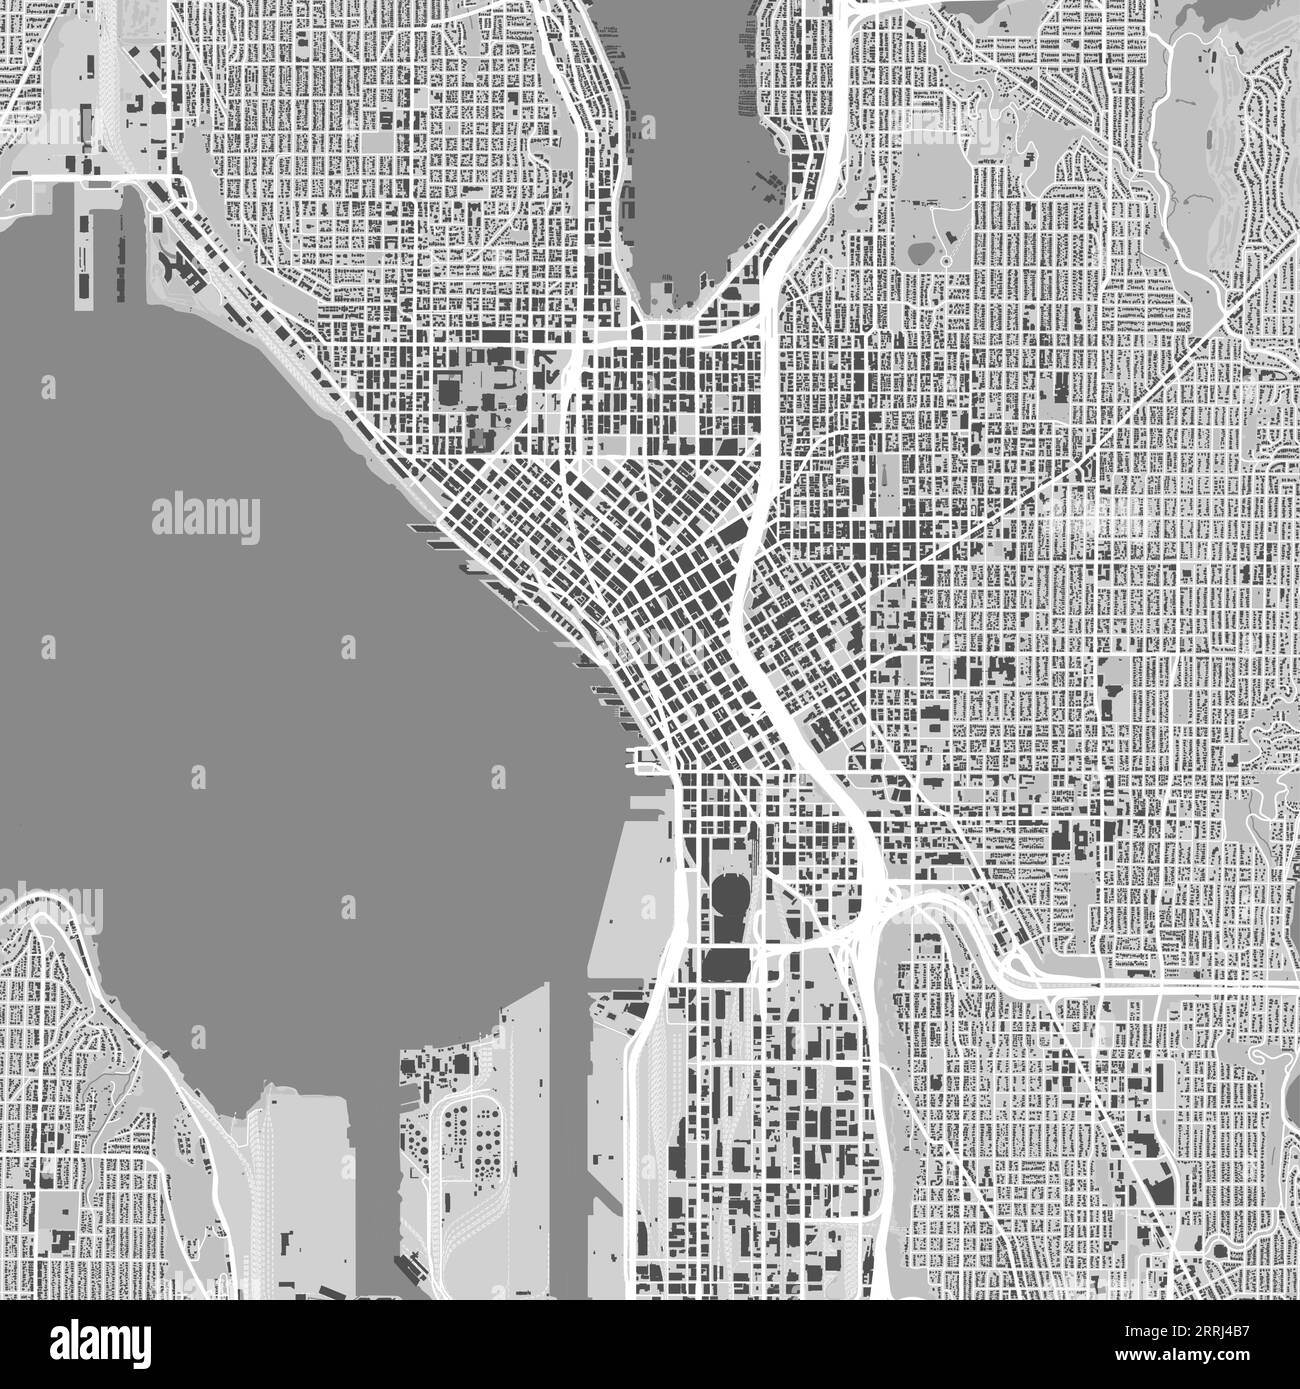 Mappa della città di Seattle, Stati Uniti. Poster urbano in bianco e nero. Immagine della mappa stradale con vista sull'area metropolitana della città. Illustrazione Vettoriale